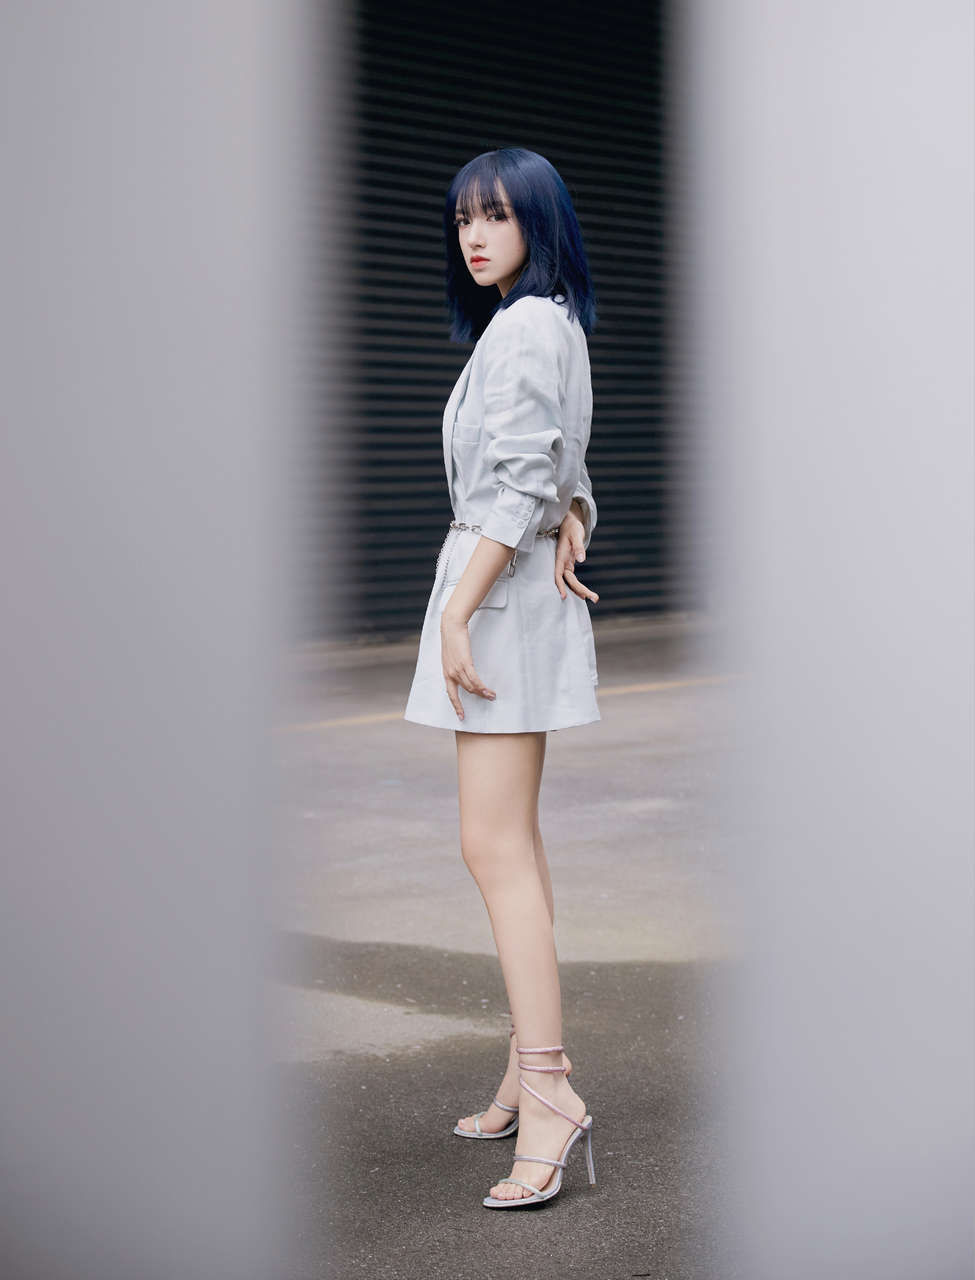 Cheng Xiao Feet